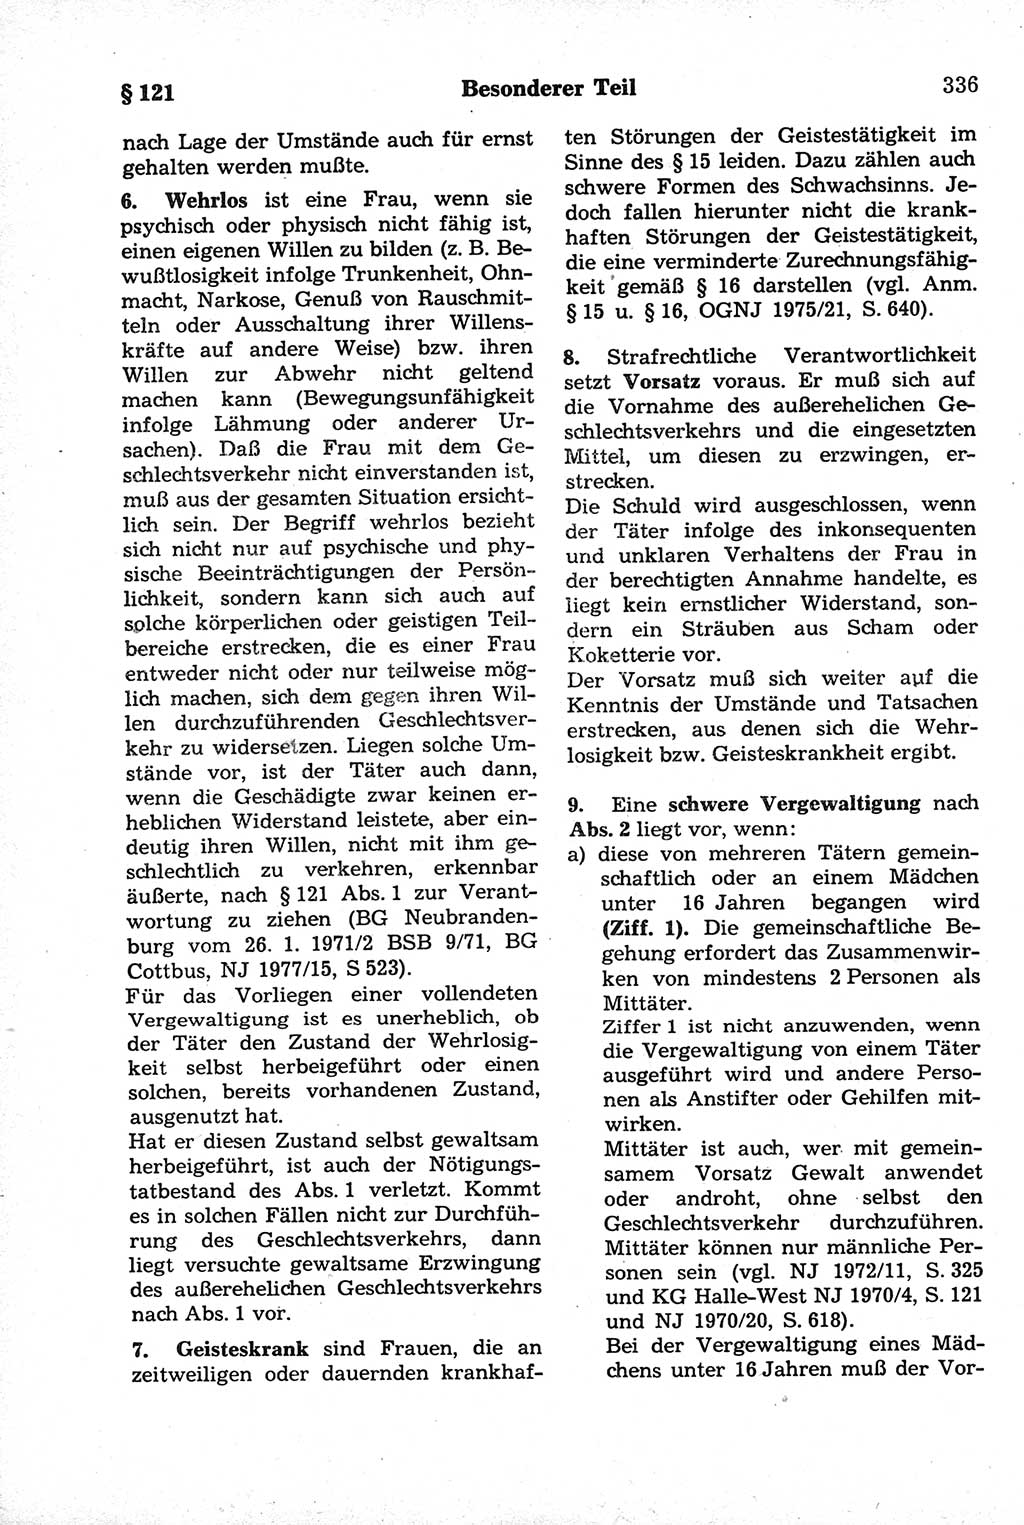 Strafrecht der Deutschen Demokratischen Republik (DDR), Kommentar zum Strafgesetzbuch (StGB) 1981, Seite 336 (Strafr. DDR Komm. StGB 1981, S. 336)